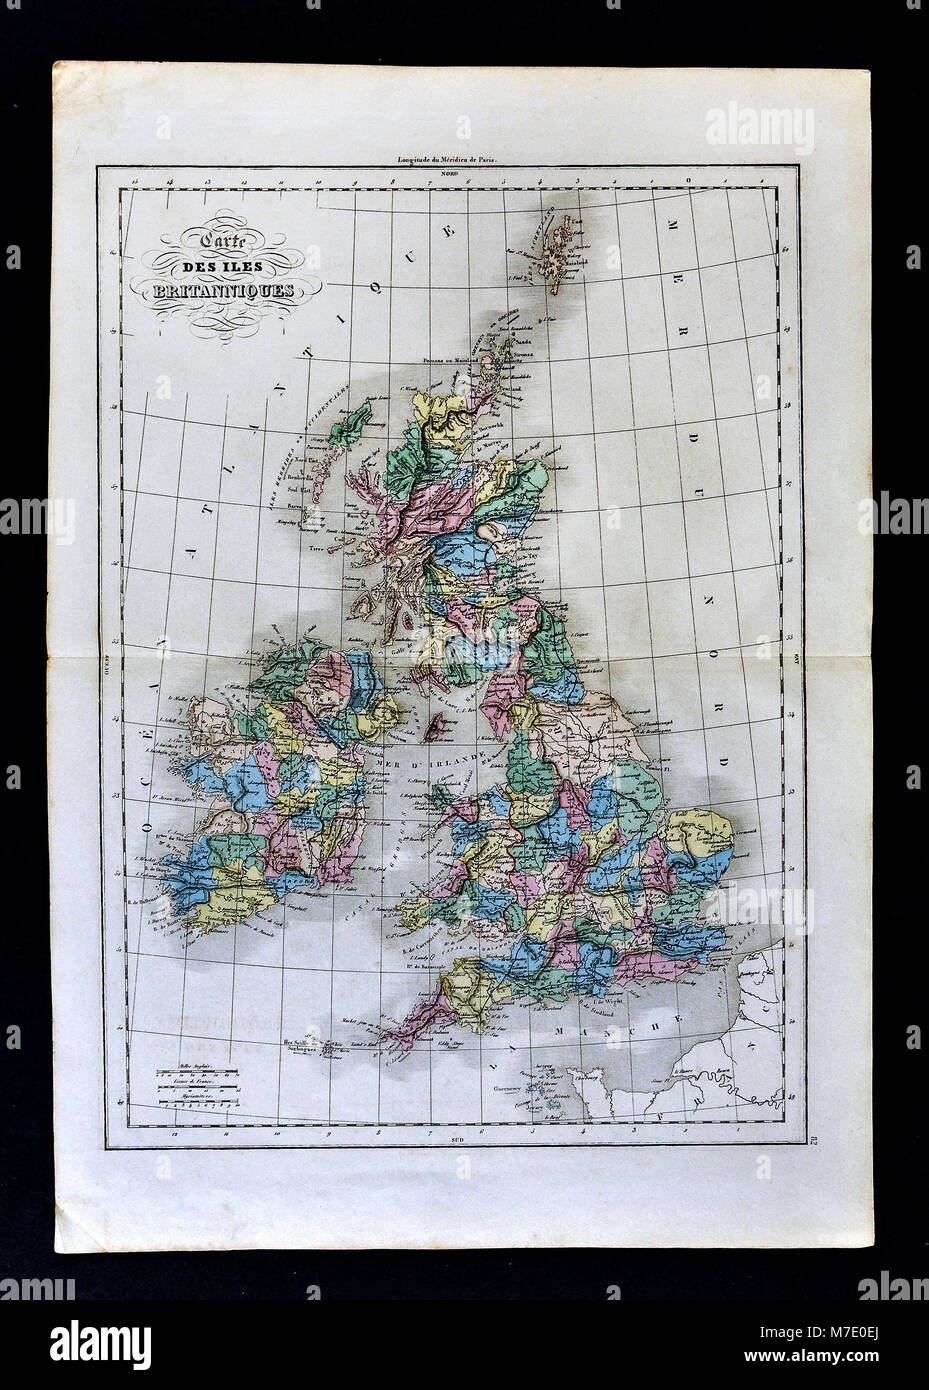 Delamarche 1858 Carte historique des îles Britanniques montrant l'Angleterre, Ecosse, Pays de Galles et l'Irlande Banque D'Images